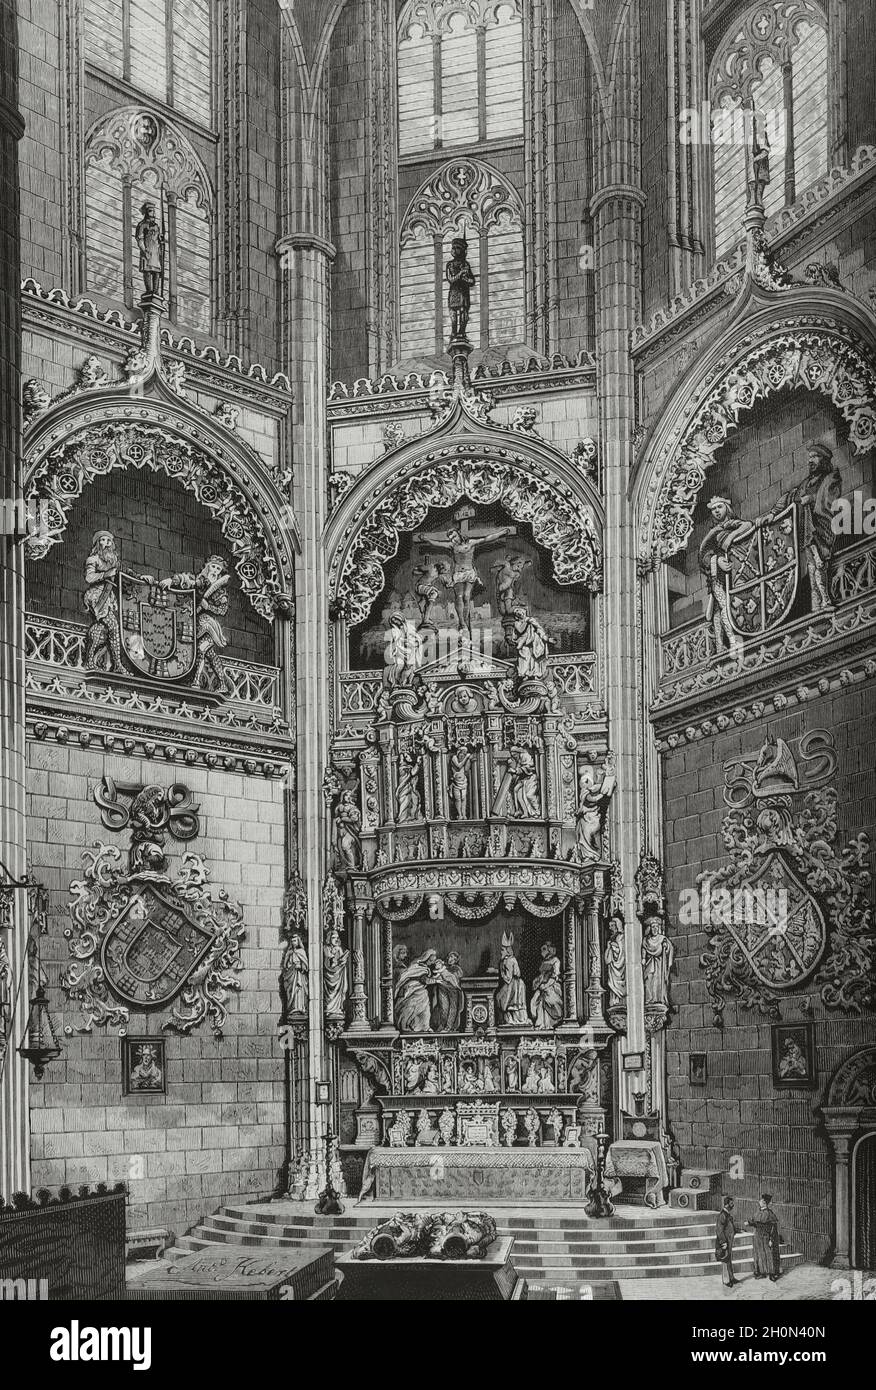 Spanien, Burgos. Kathedrale. Die Kapelle Der Konstantin. Bestattungskapelle im extravaganten gotischen Stil. Der Bau wurde von den Constables of Cas in Auftrag gegeben Stockfoto